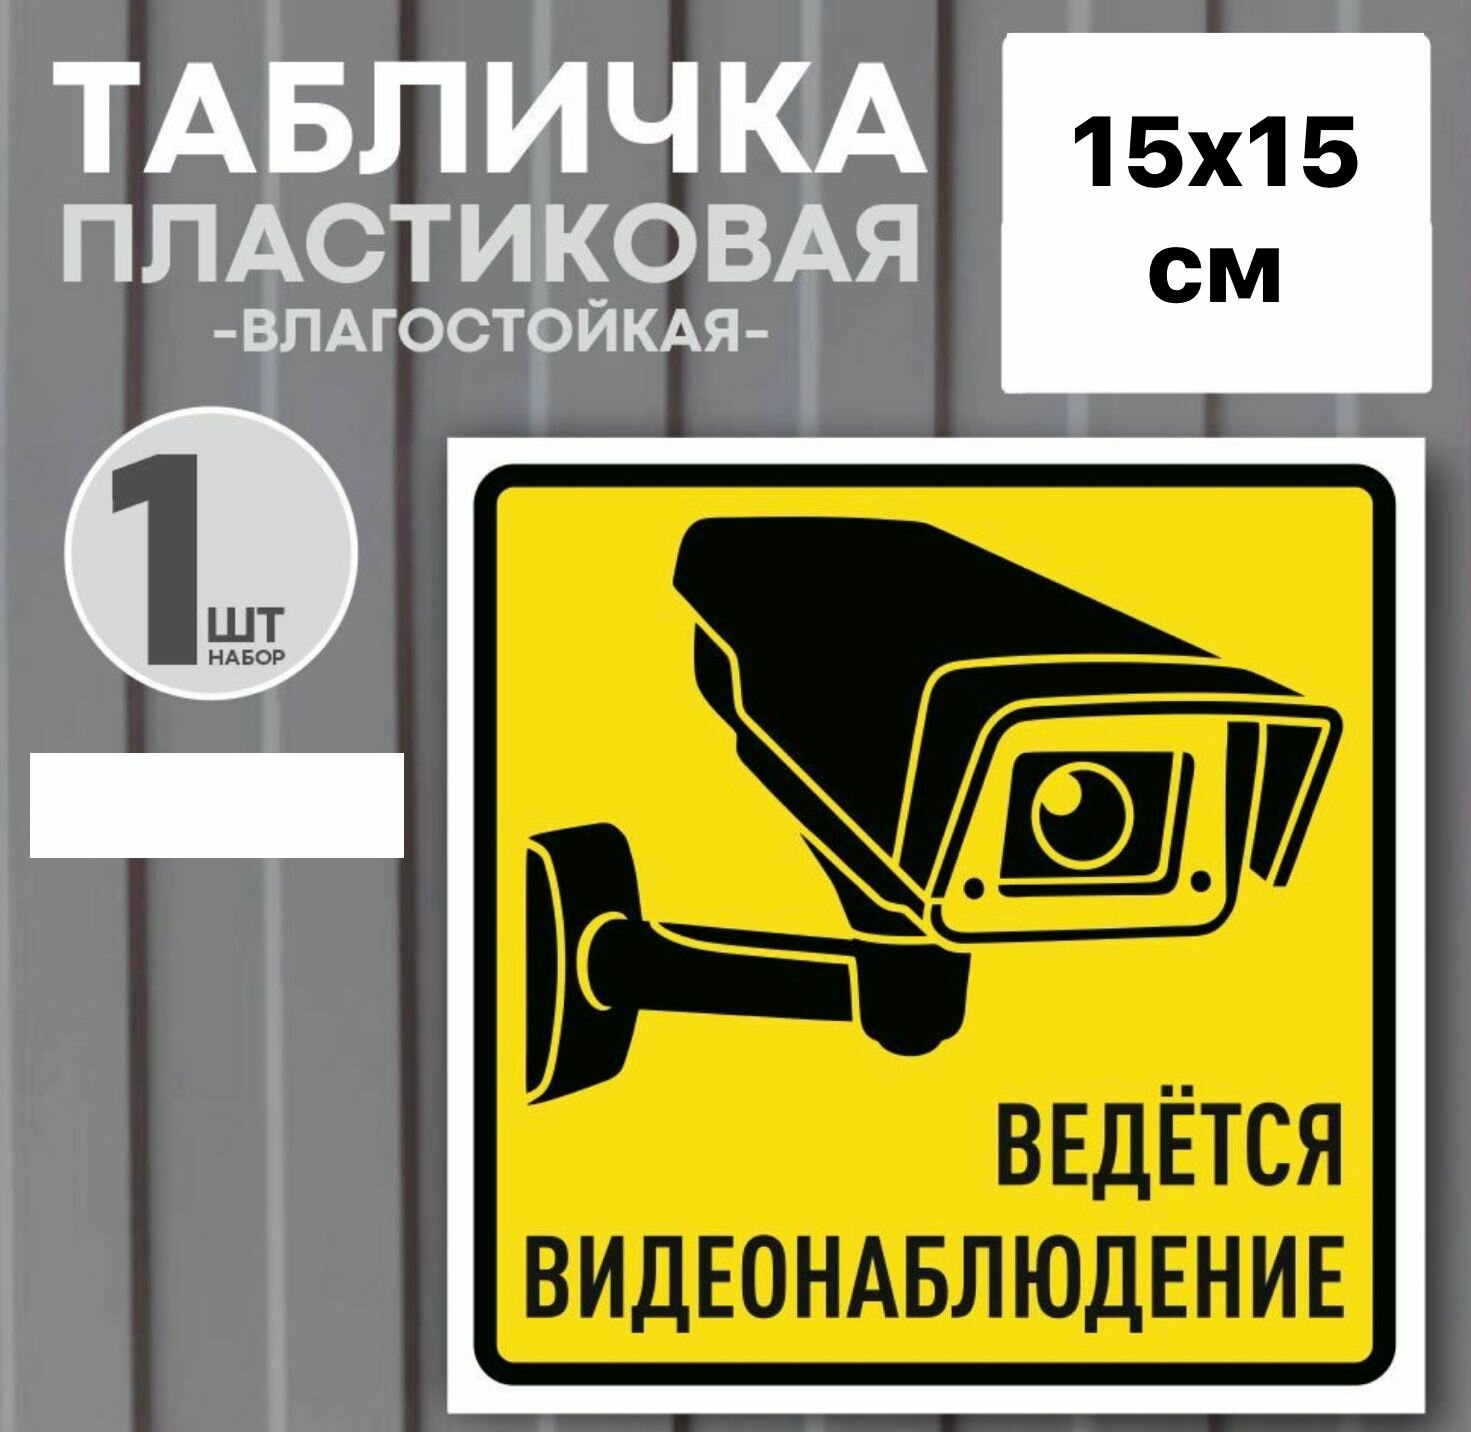 Табличка "Ведется видеонаблюдение" 15х15 см